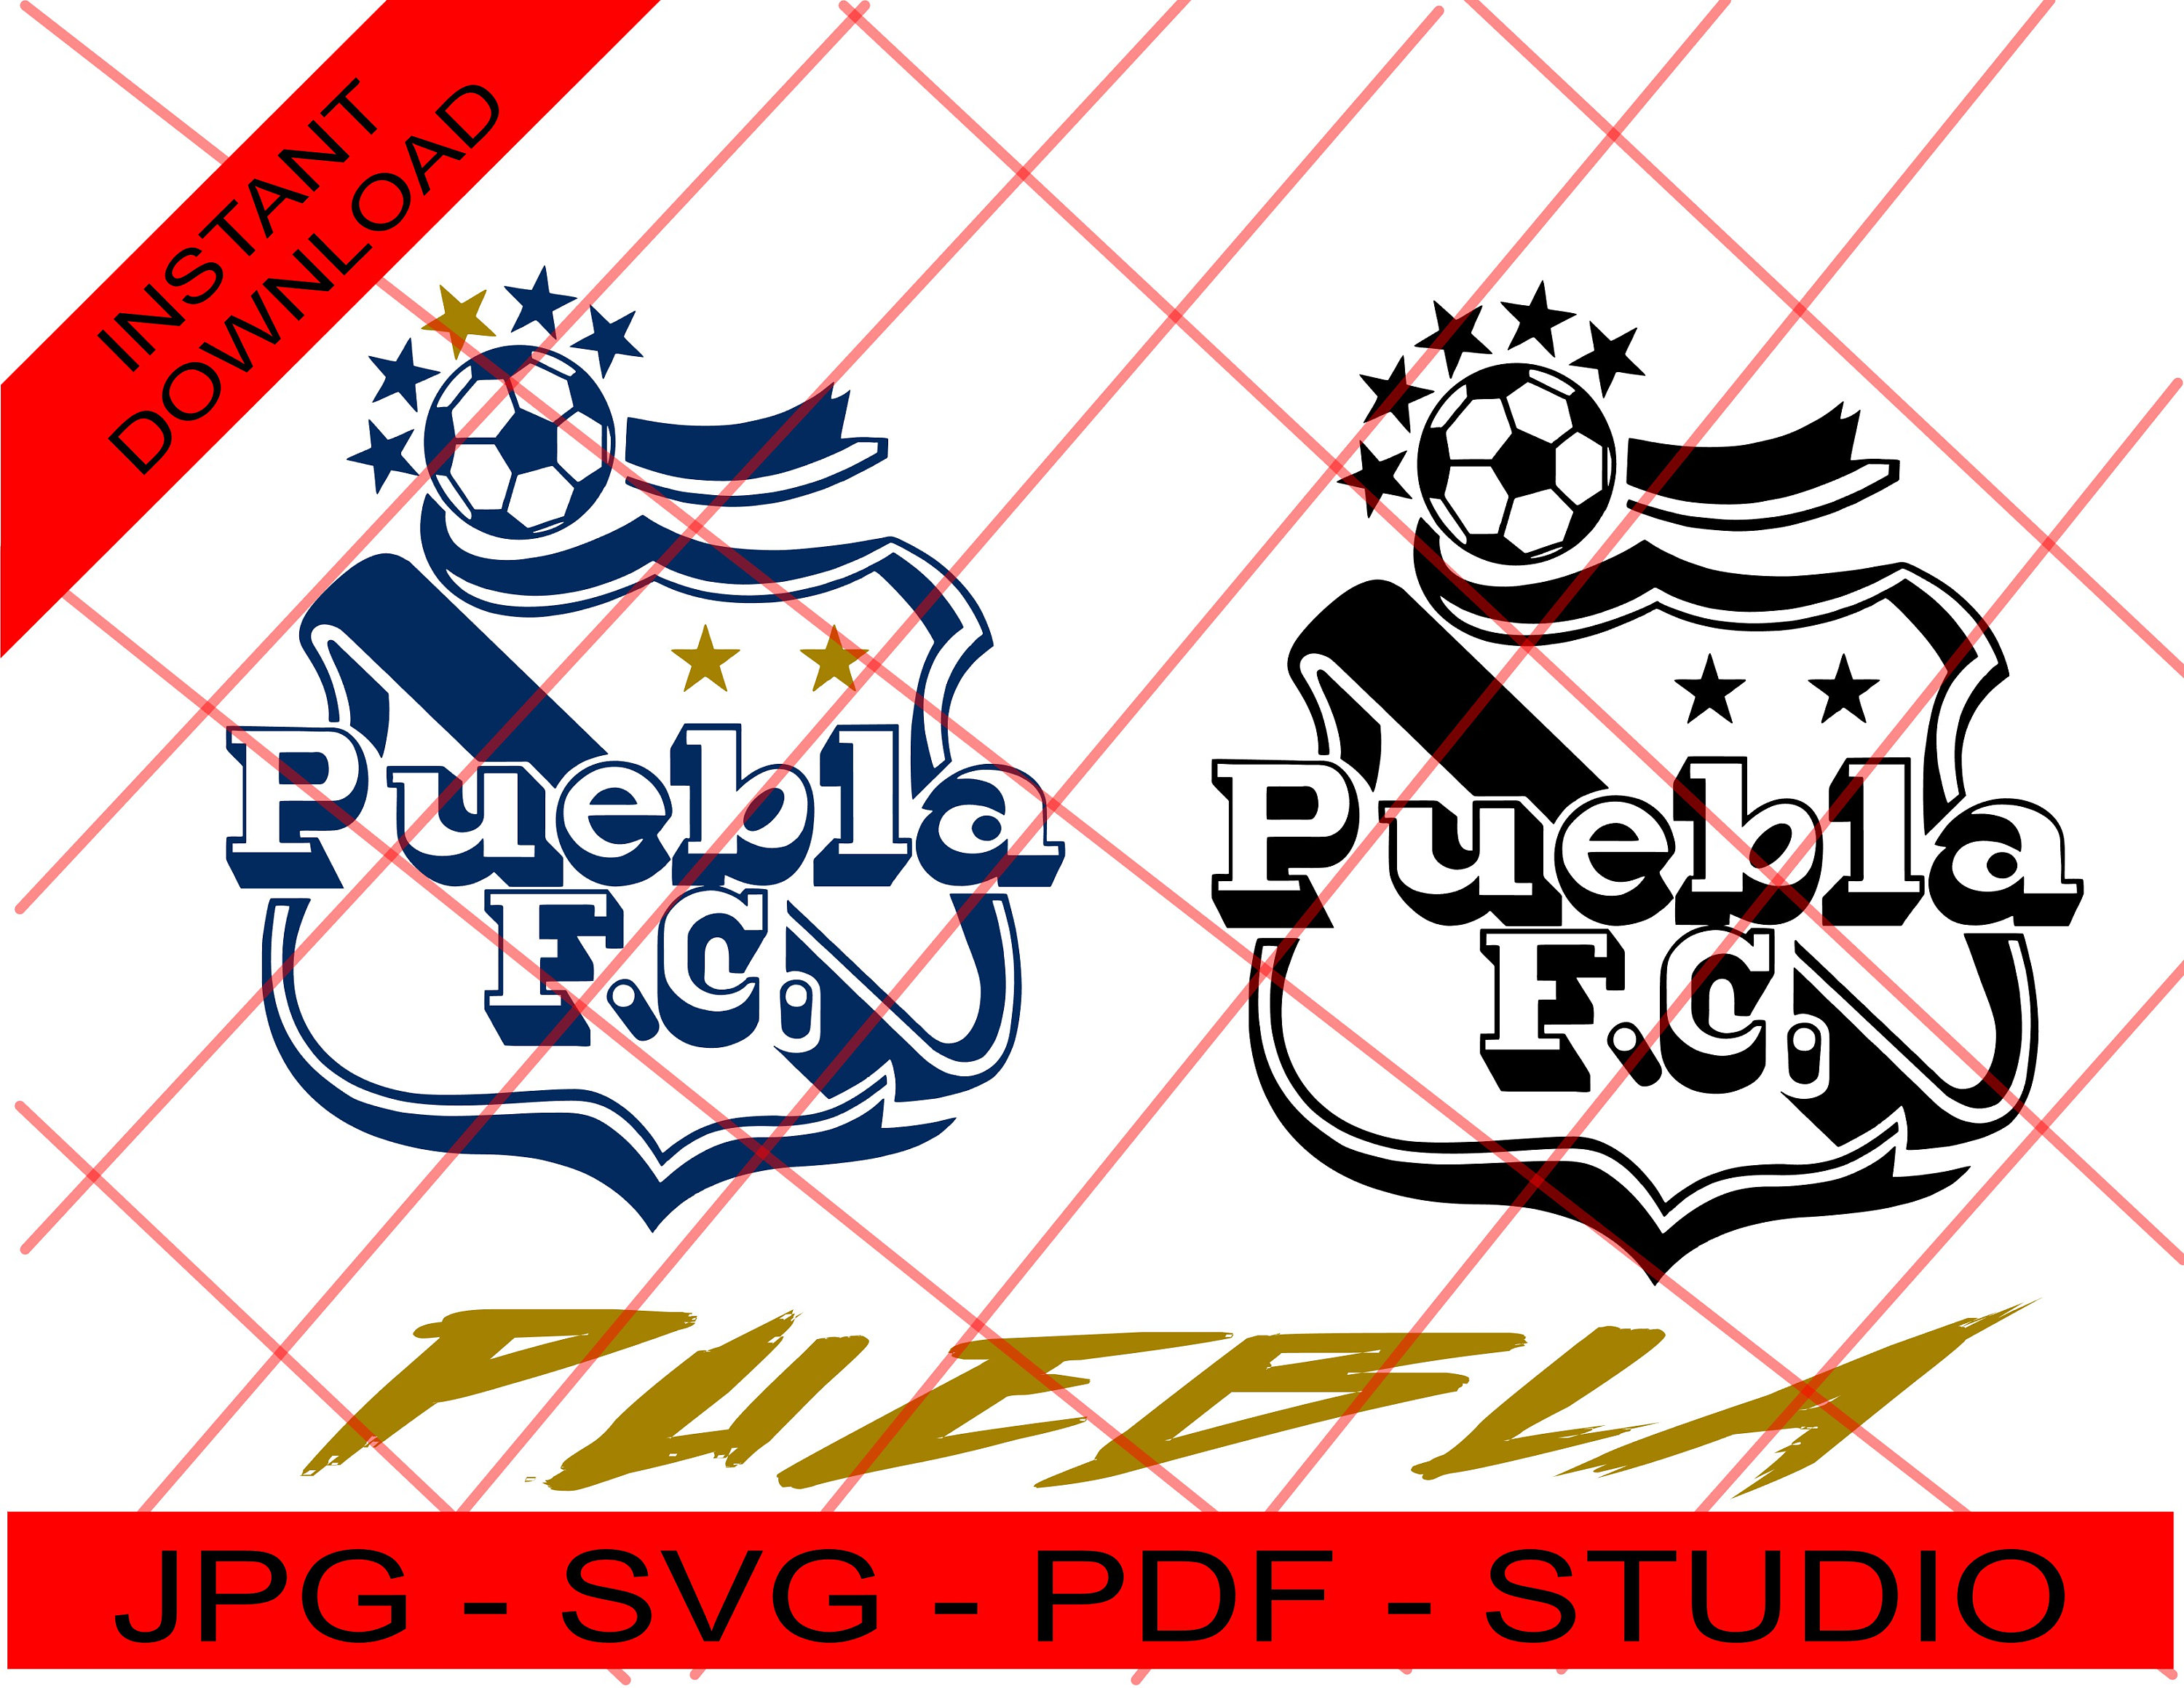 Club De Futbol Puebla Mexican Soccer Team Puebla. Archivos - Etsy Denmark